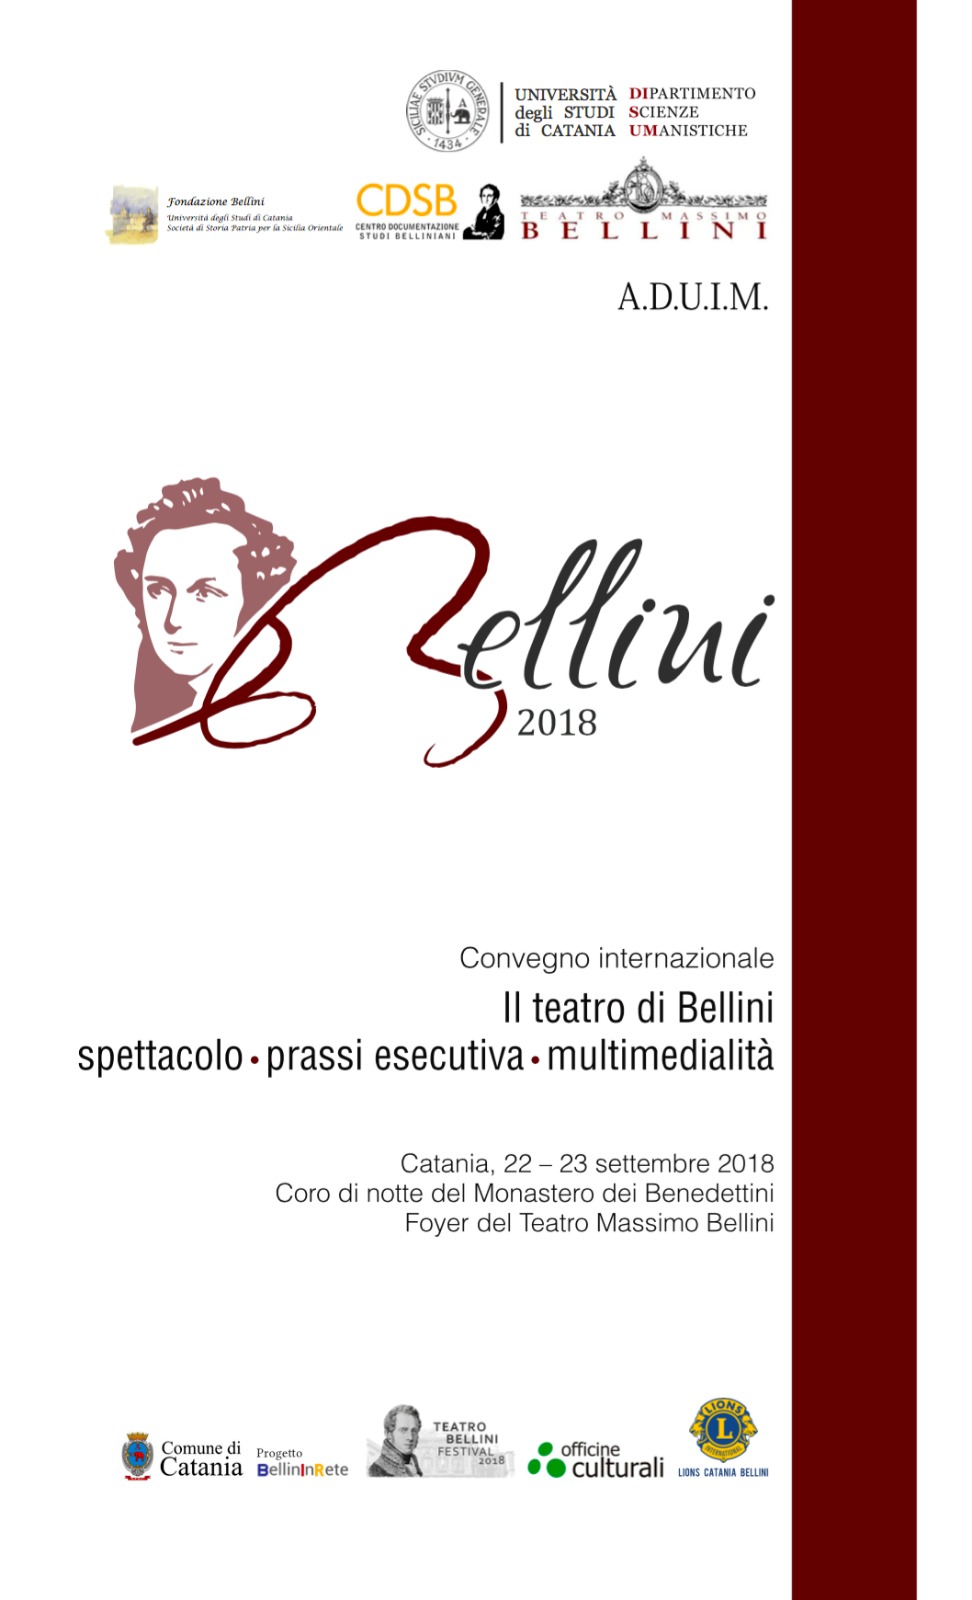 Convegno Internazionale “Il Teatro di Bellini. Spettacolo prassi esecutiva multimedialità”